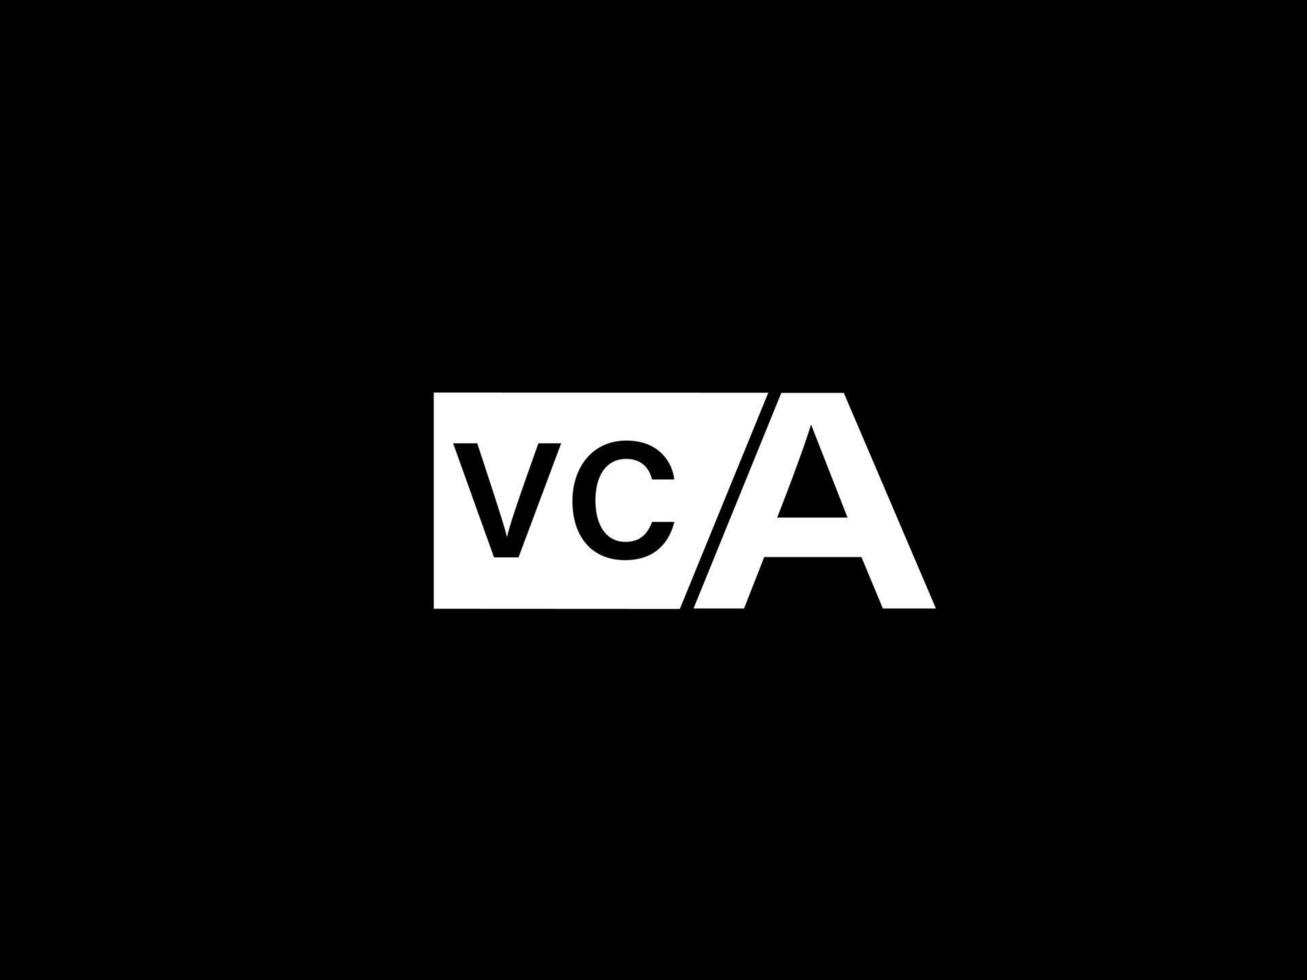 logo vca et art vectoriel de conception graphique, icônes isolées sur fond noir